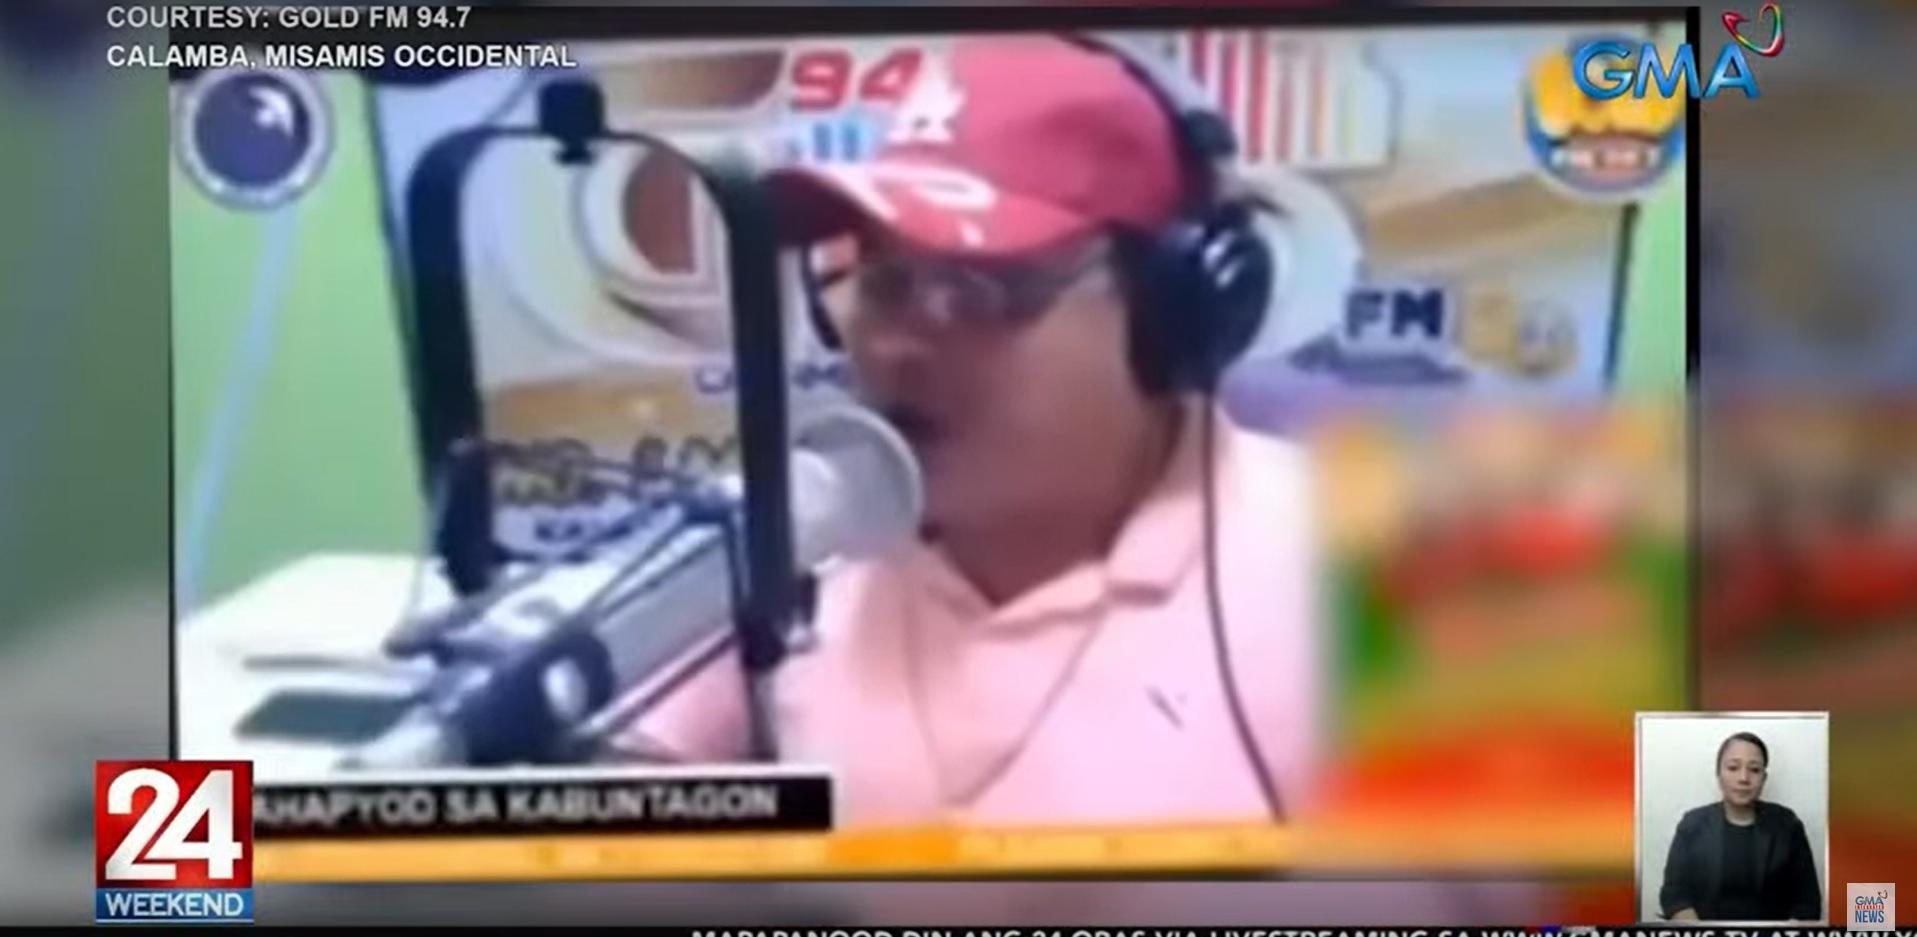 radio anchor Juan Jumalon killed in Misamis Occidental